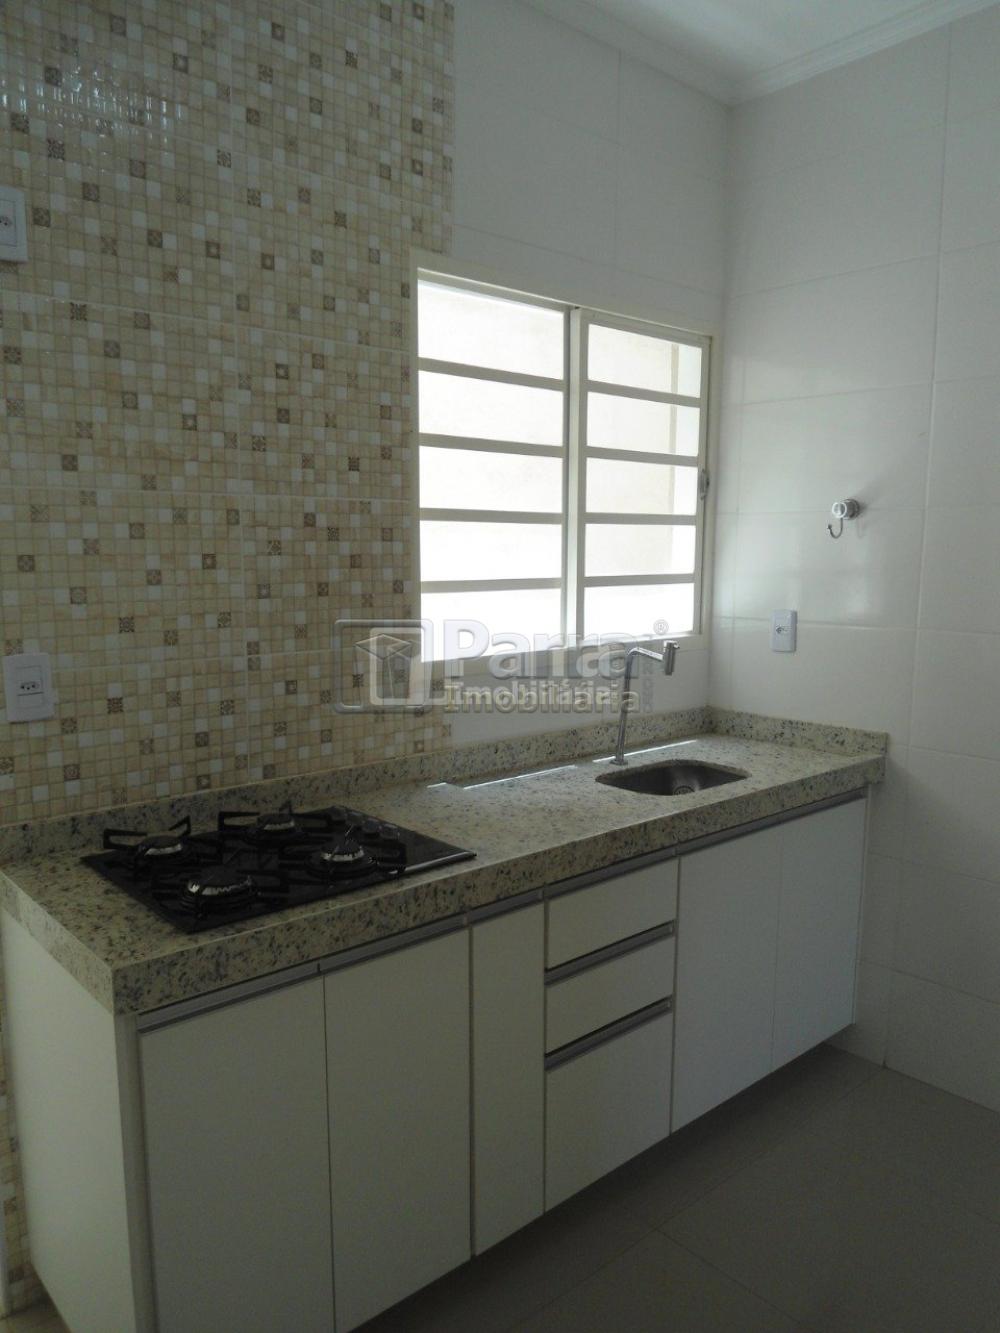 Alugar Apartamento / Padrão em Franca R$ 950,00 - Foto 4